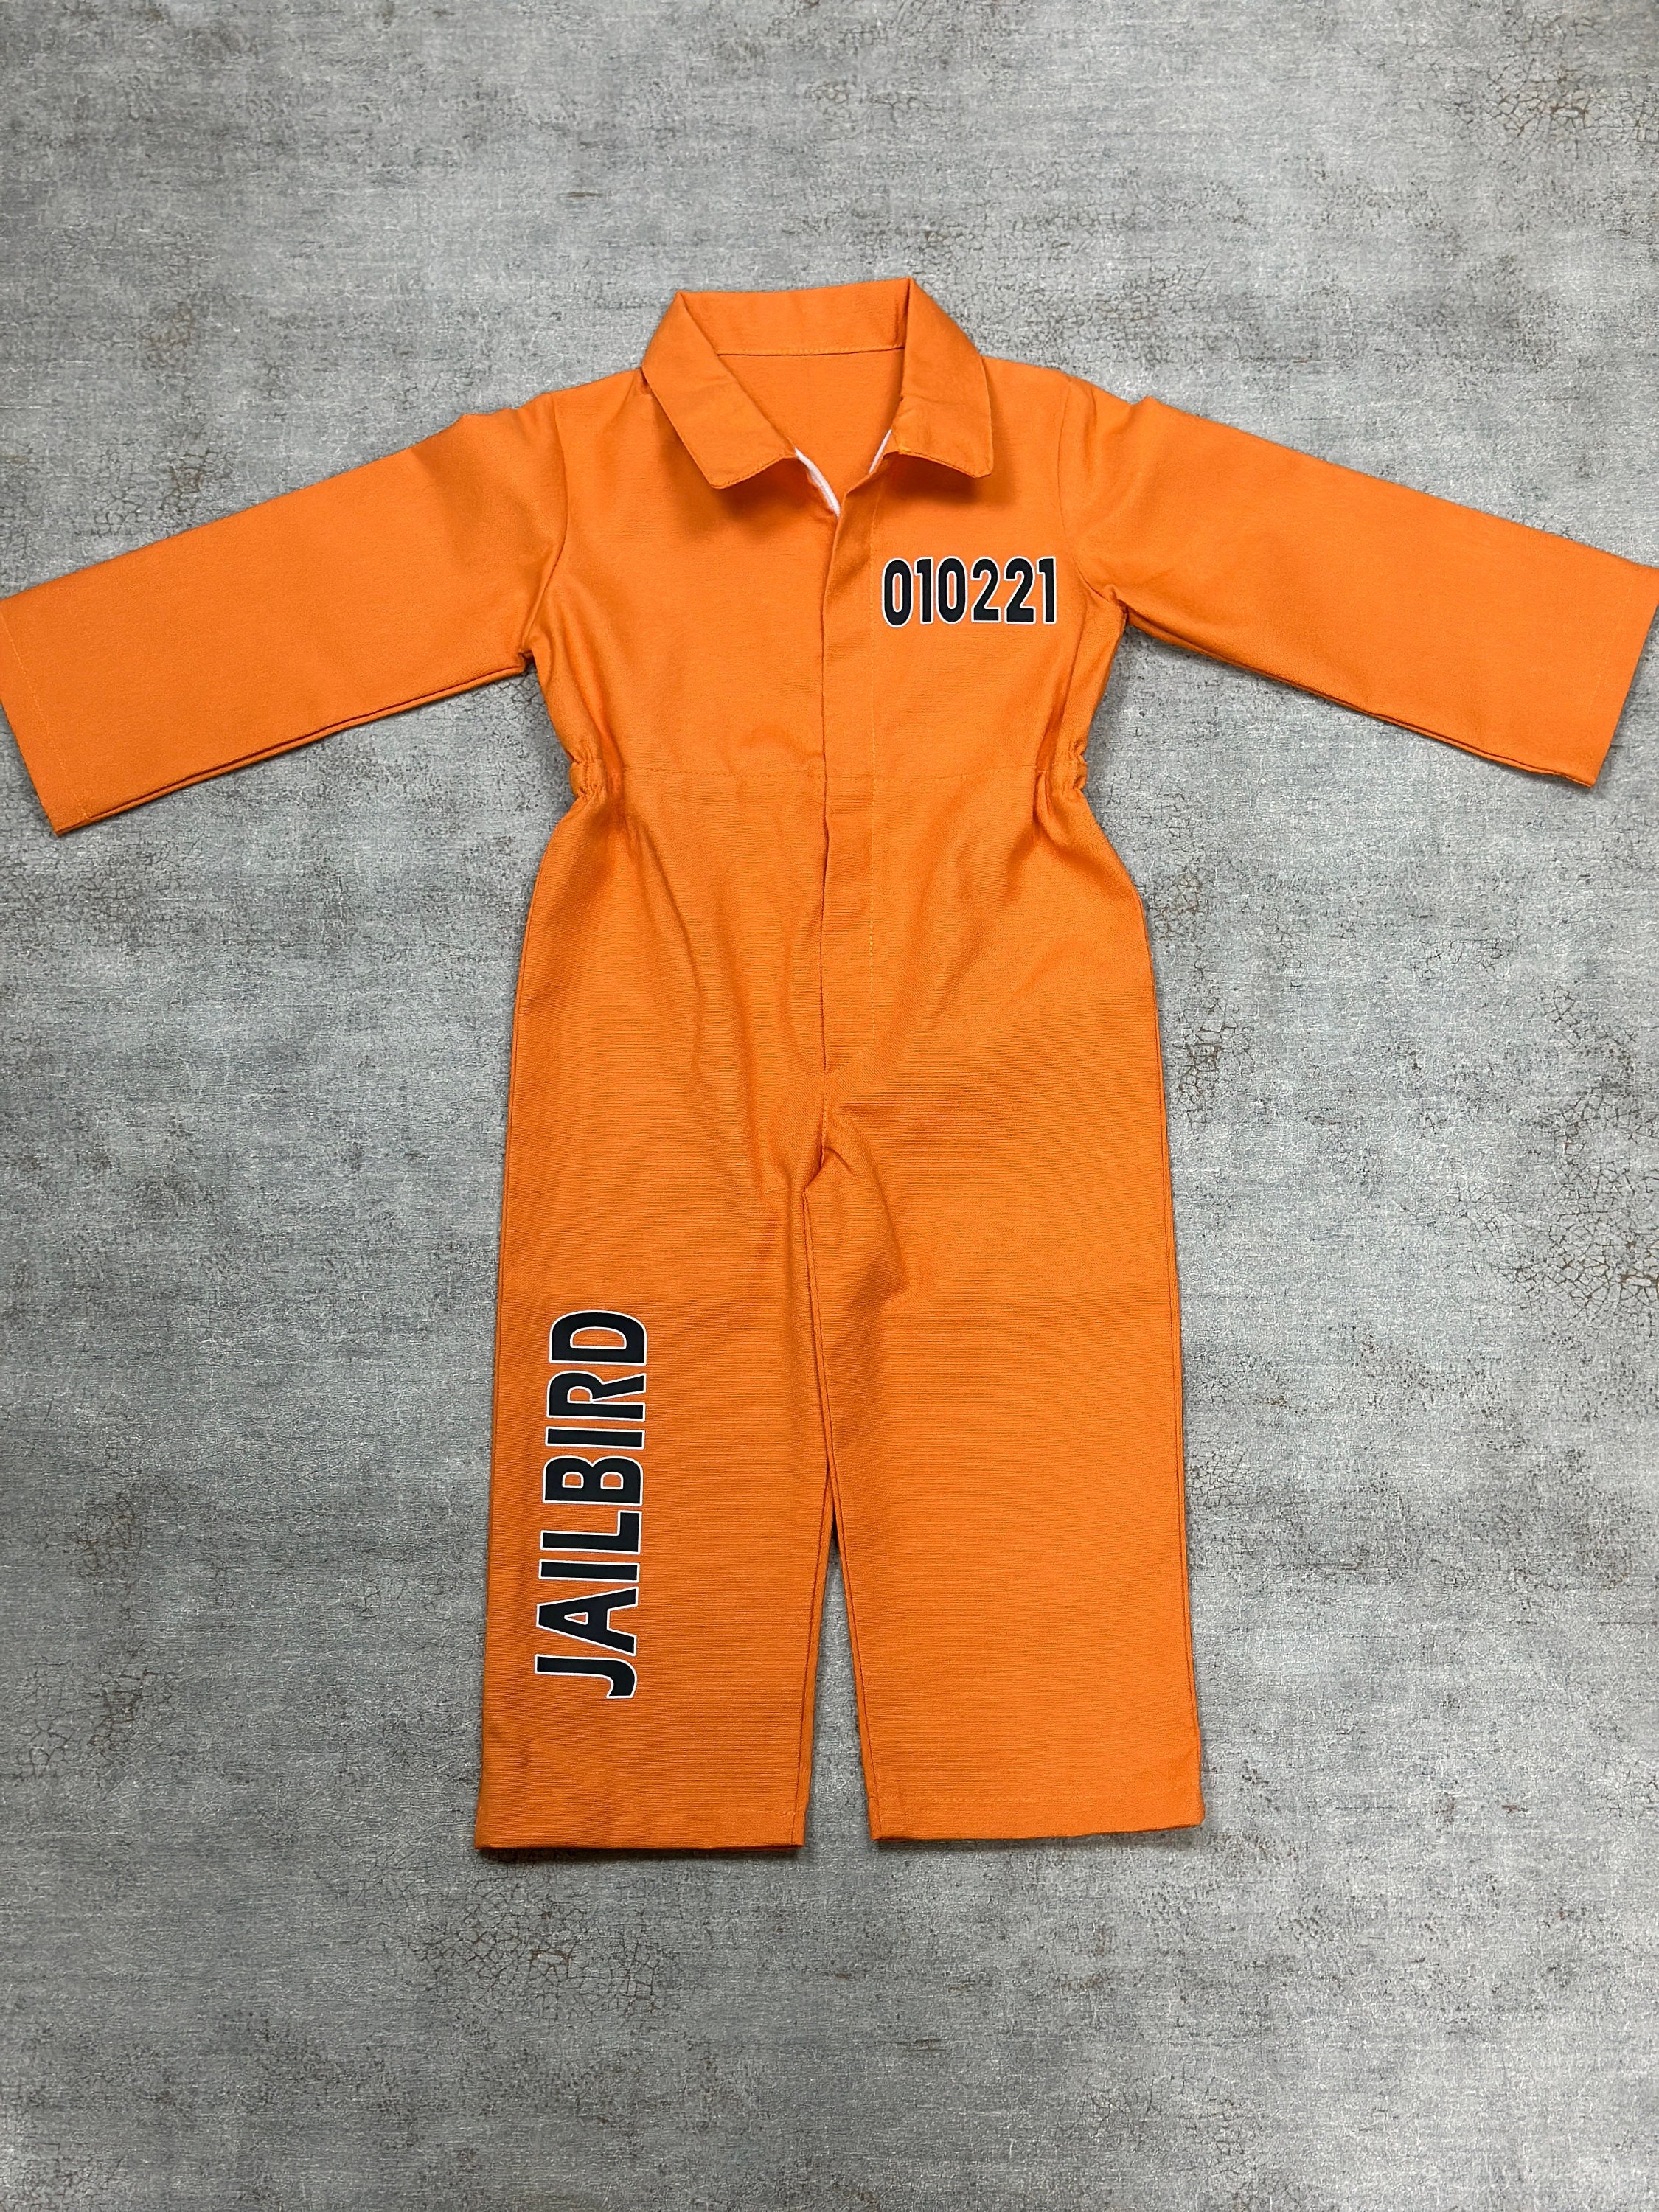 Las mejores ofertas en Convicto/prisionero/recluso trajes naranja